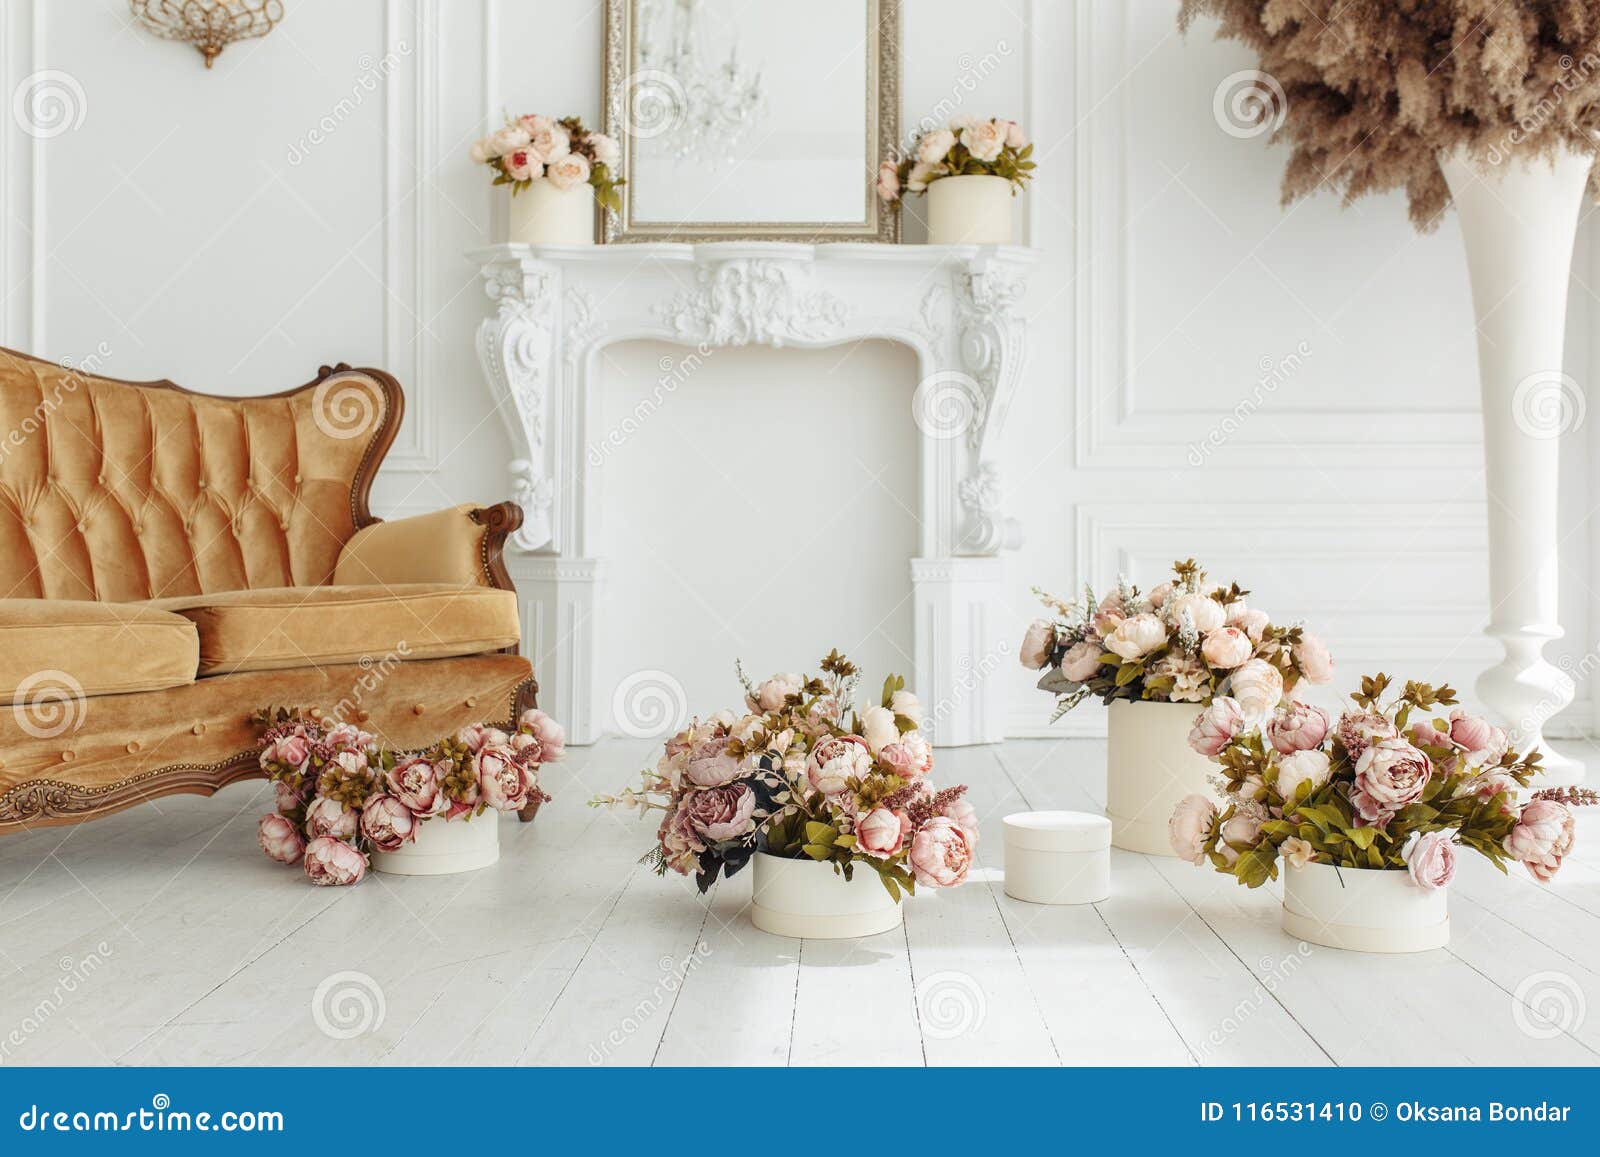 Schones Provance Wohnzimmer Mit Braunem Sofa Near Kamin Mit Blumen Und Kerzen Stockfoto Bild Von Near Provance